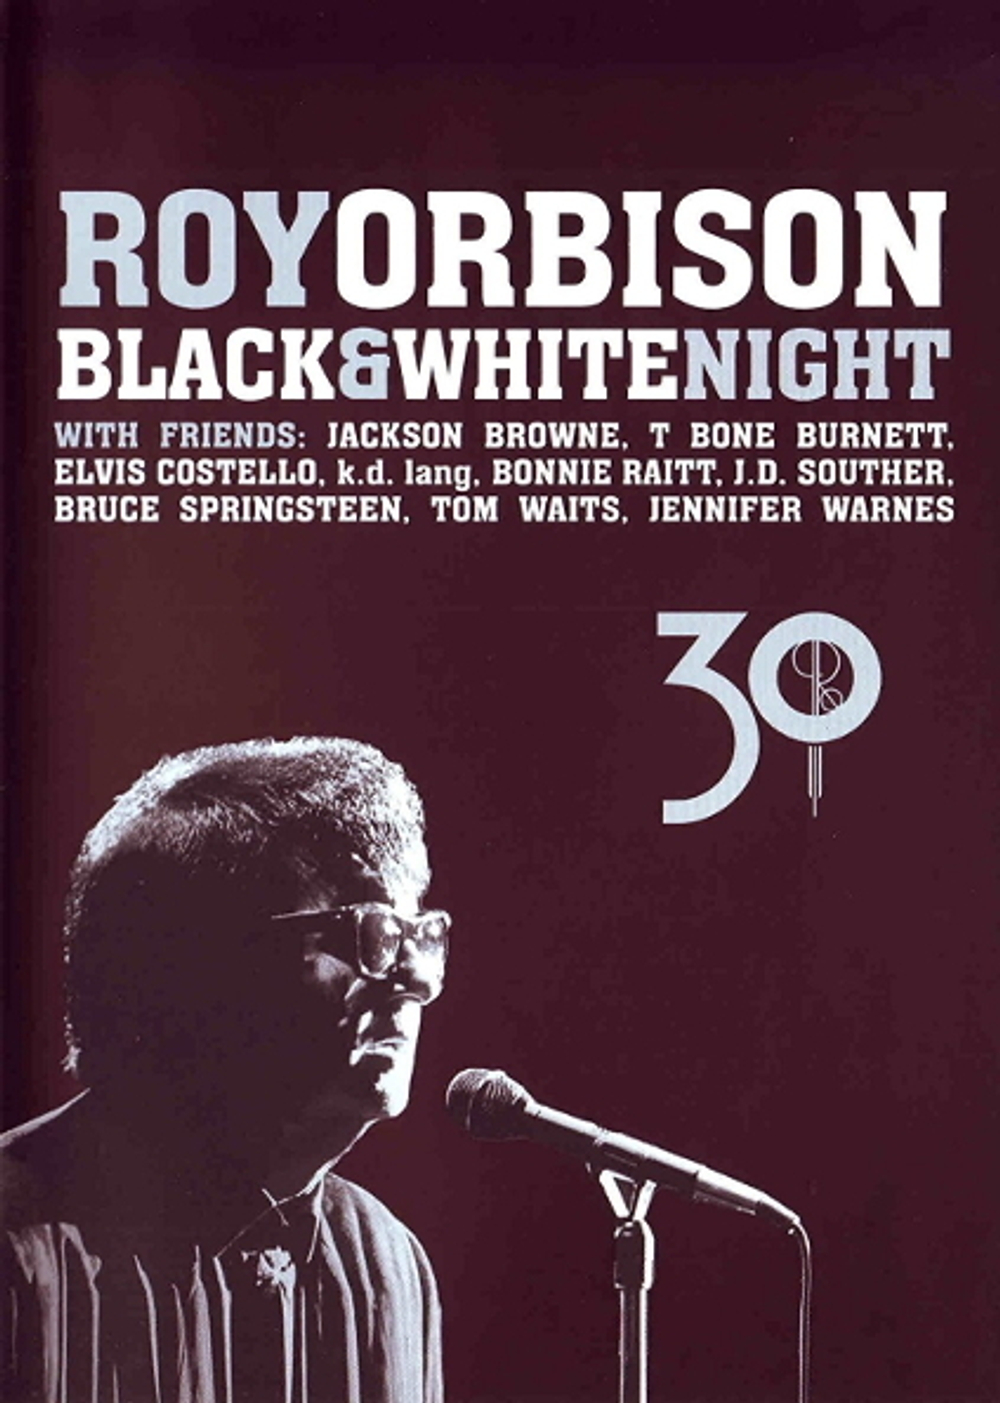 Расширенное издание Black u0026 White Night 30 — Roy Orbison купить в  интернет-магазине Collectomania.ru